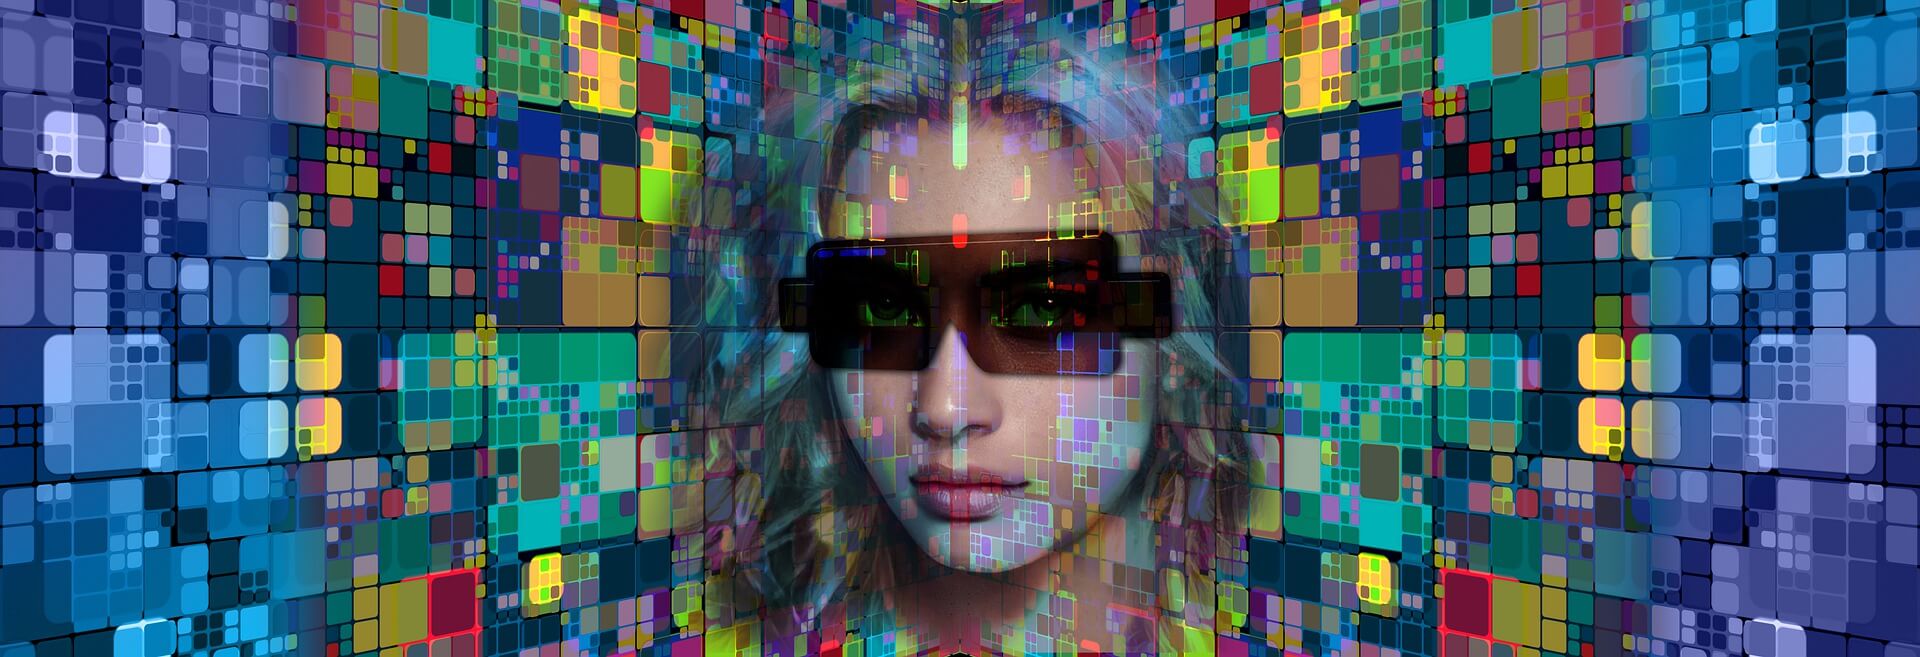 图片展示了一位戴着墨镜的女性面部，背景是由多彩的立方体组成的抽象图案，给人一种科技感和现代感。